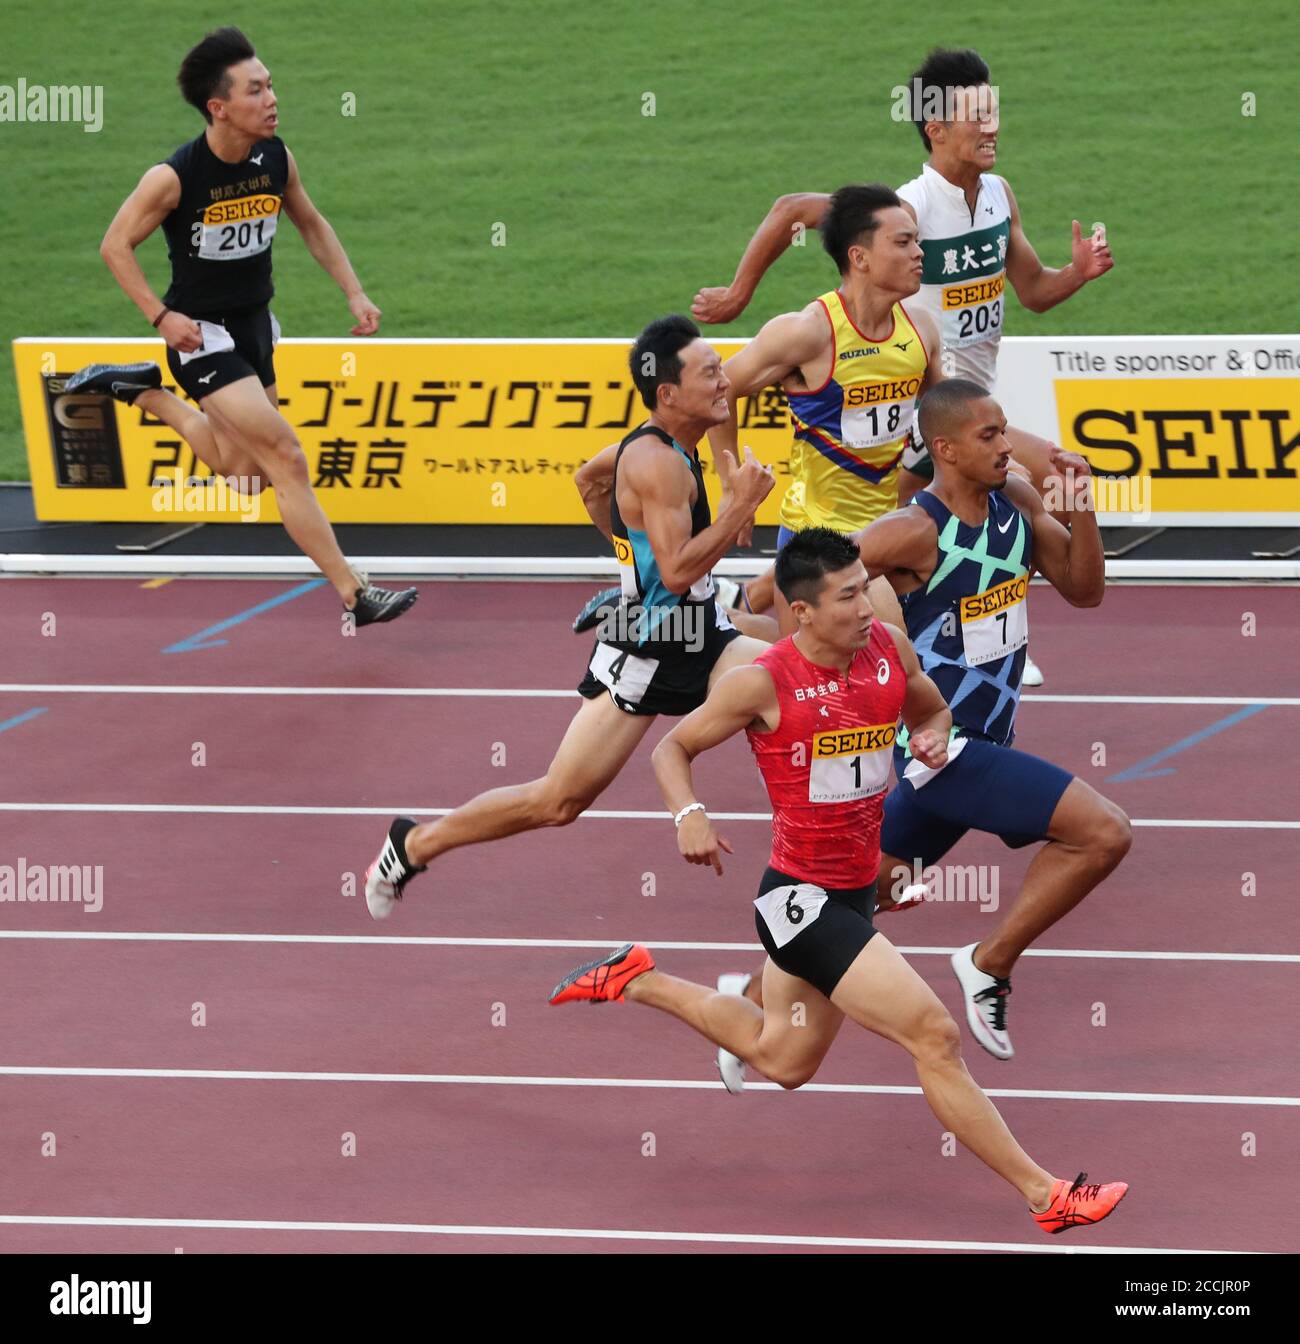 Tokyo, Giappone. 23 agosto 2020. Kiryu Yoshihide (fondo) del Giappone compete nella finale maschile di 100 metri durante il Gran Premio d'Oro 2020 a Tokyo, Giappone, il 23 agosto 2020. Credit: Du Xiaoyi/Xinhua/Alamy Live News Foto Stock